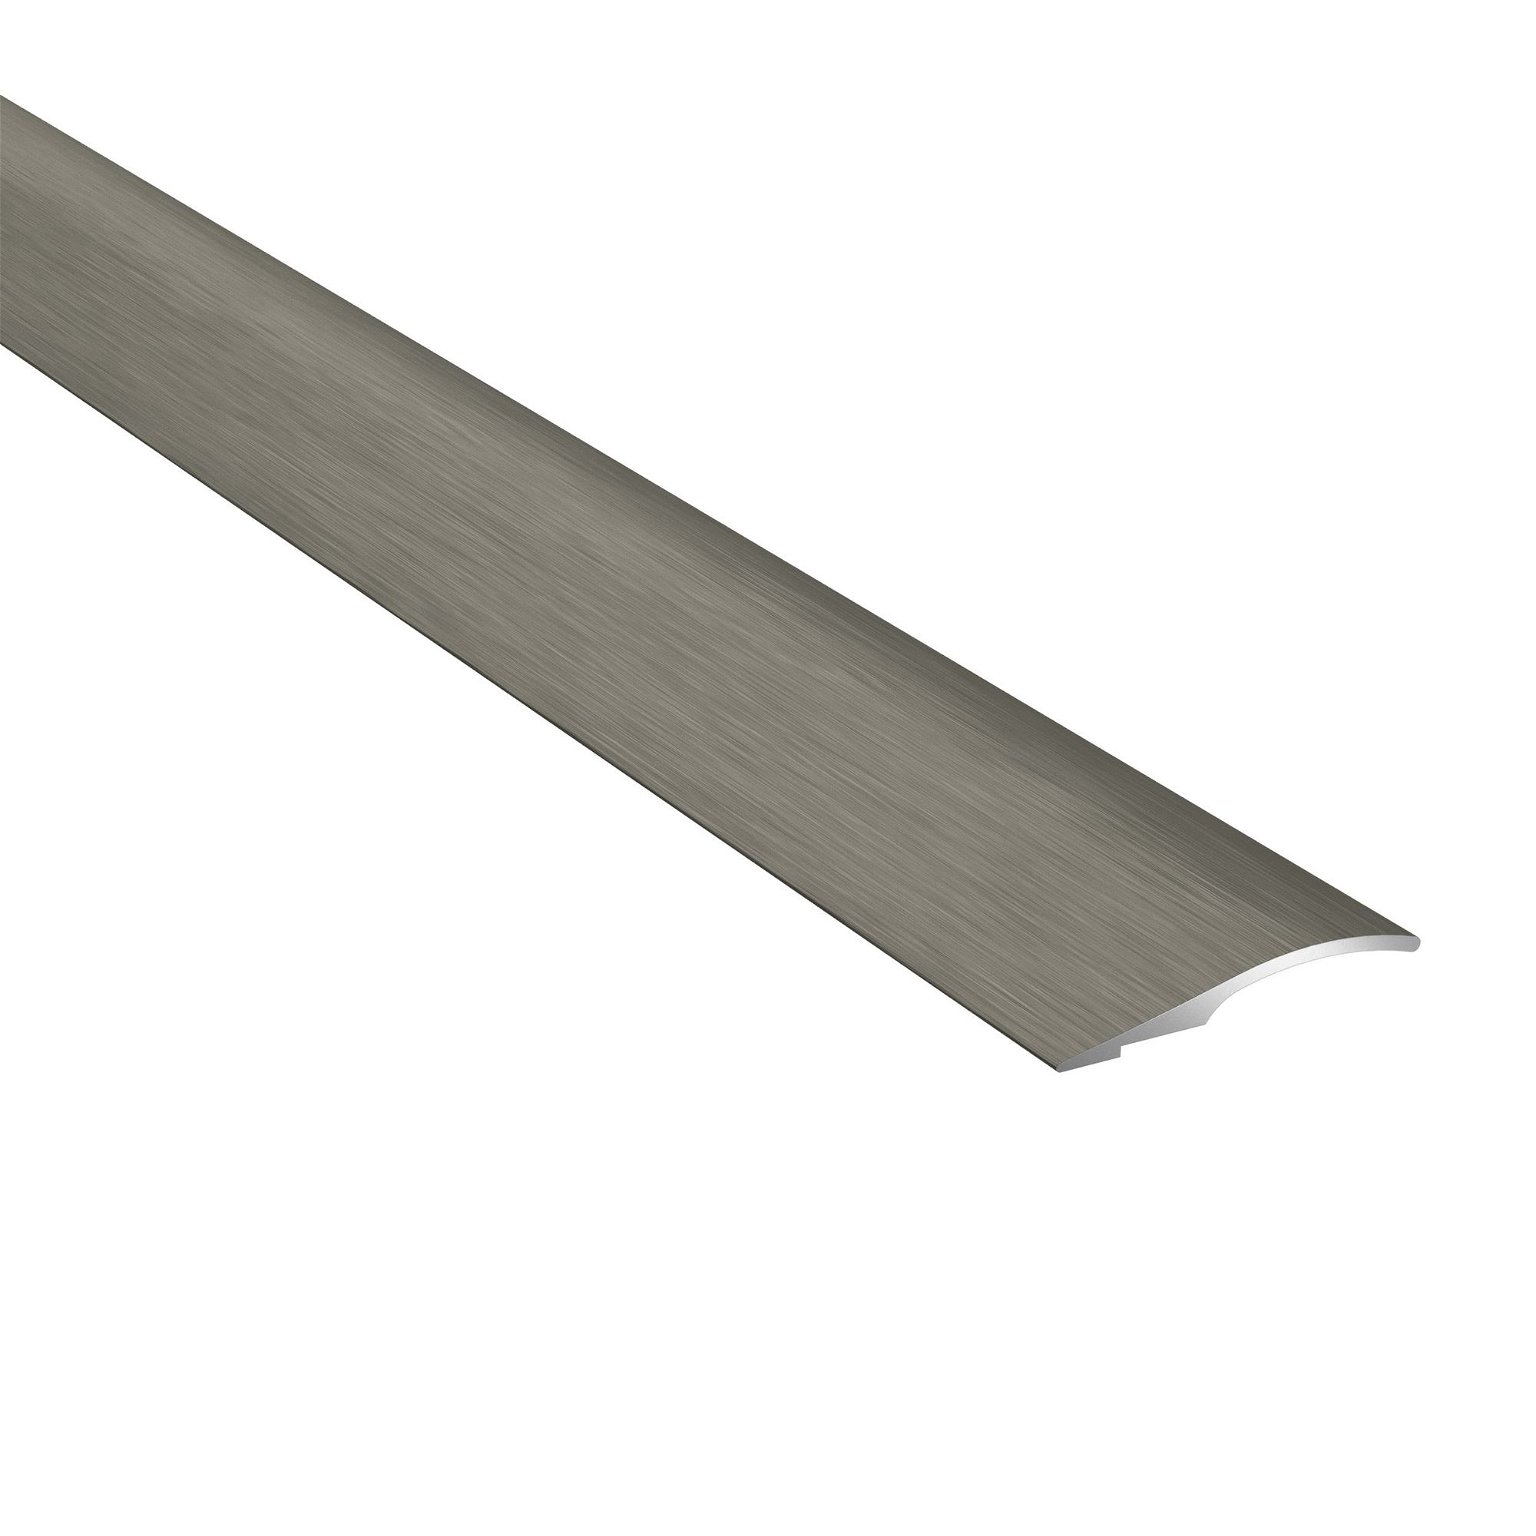 Aliumininė grindų juostelė PRO26 B3, šukuoto titano sp., 26 mm pločio, 93 cm ilgio